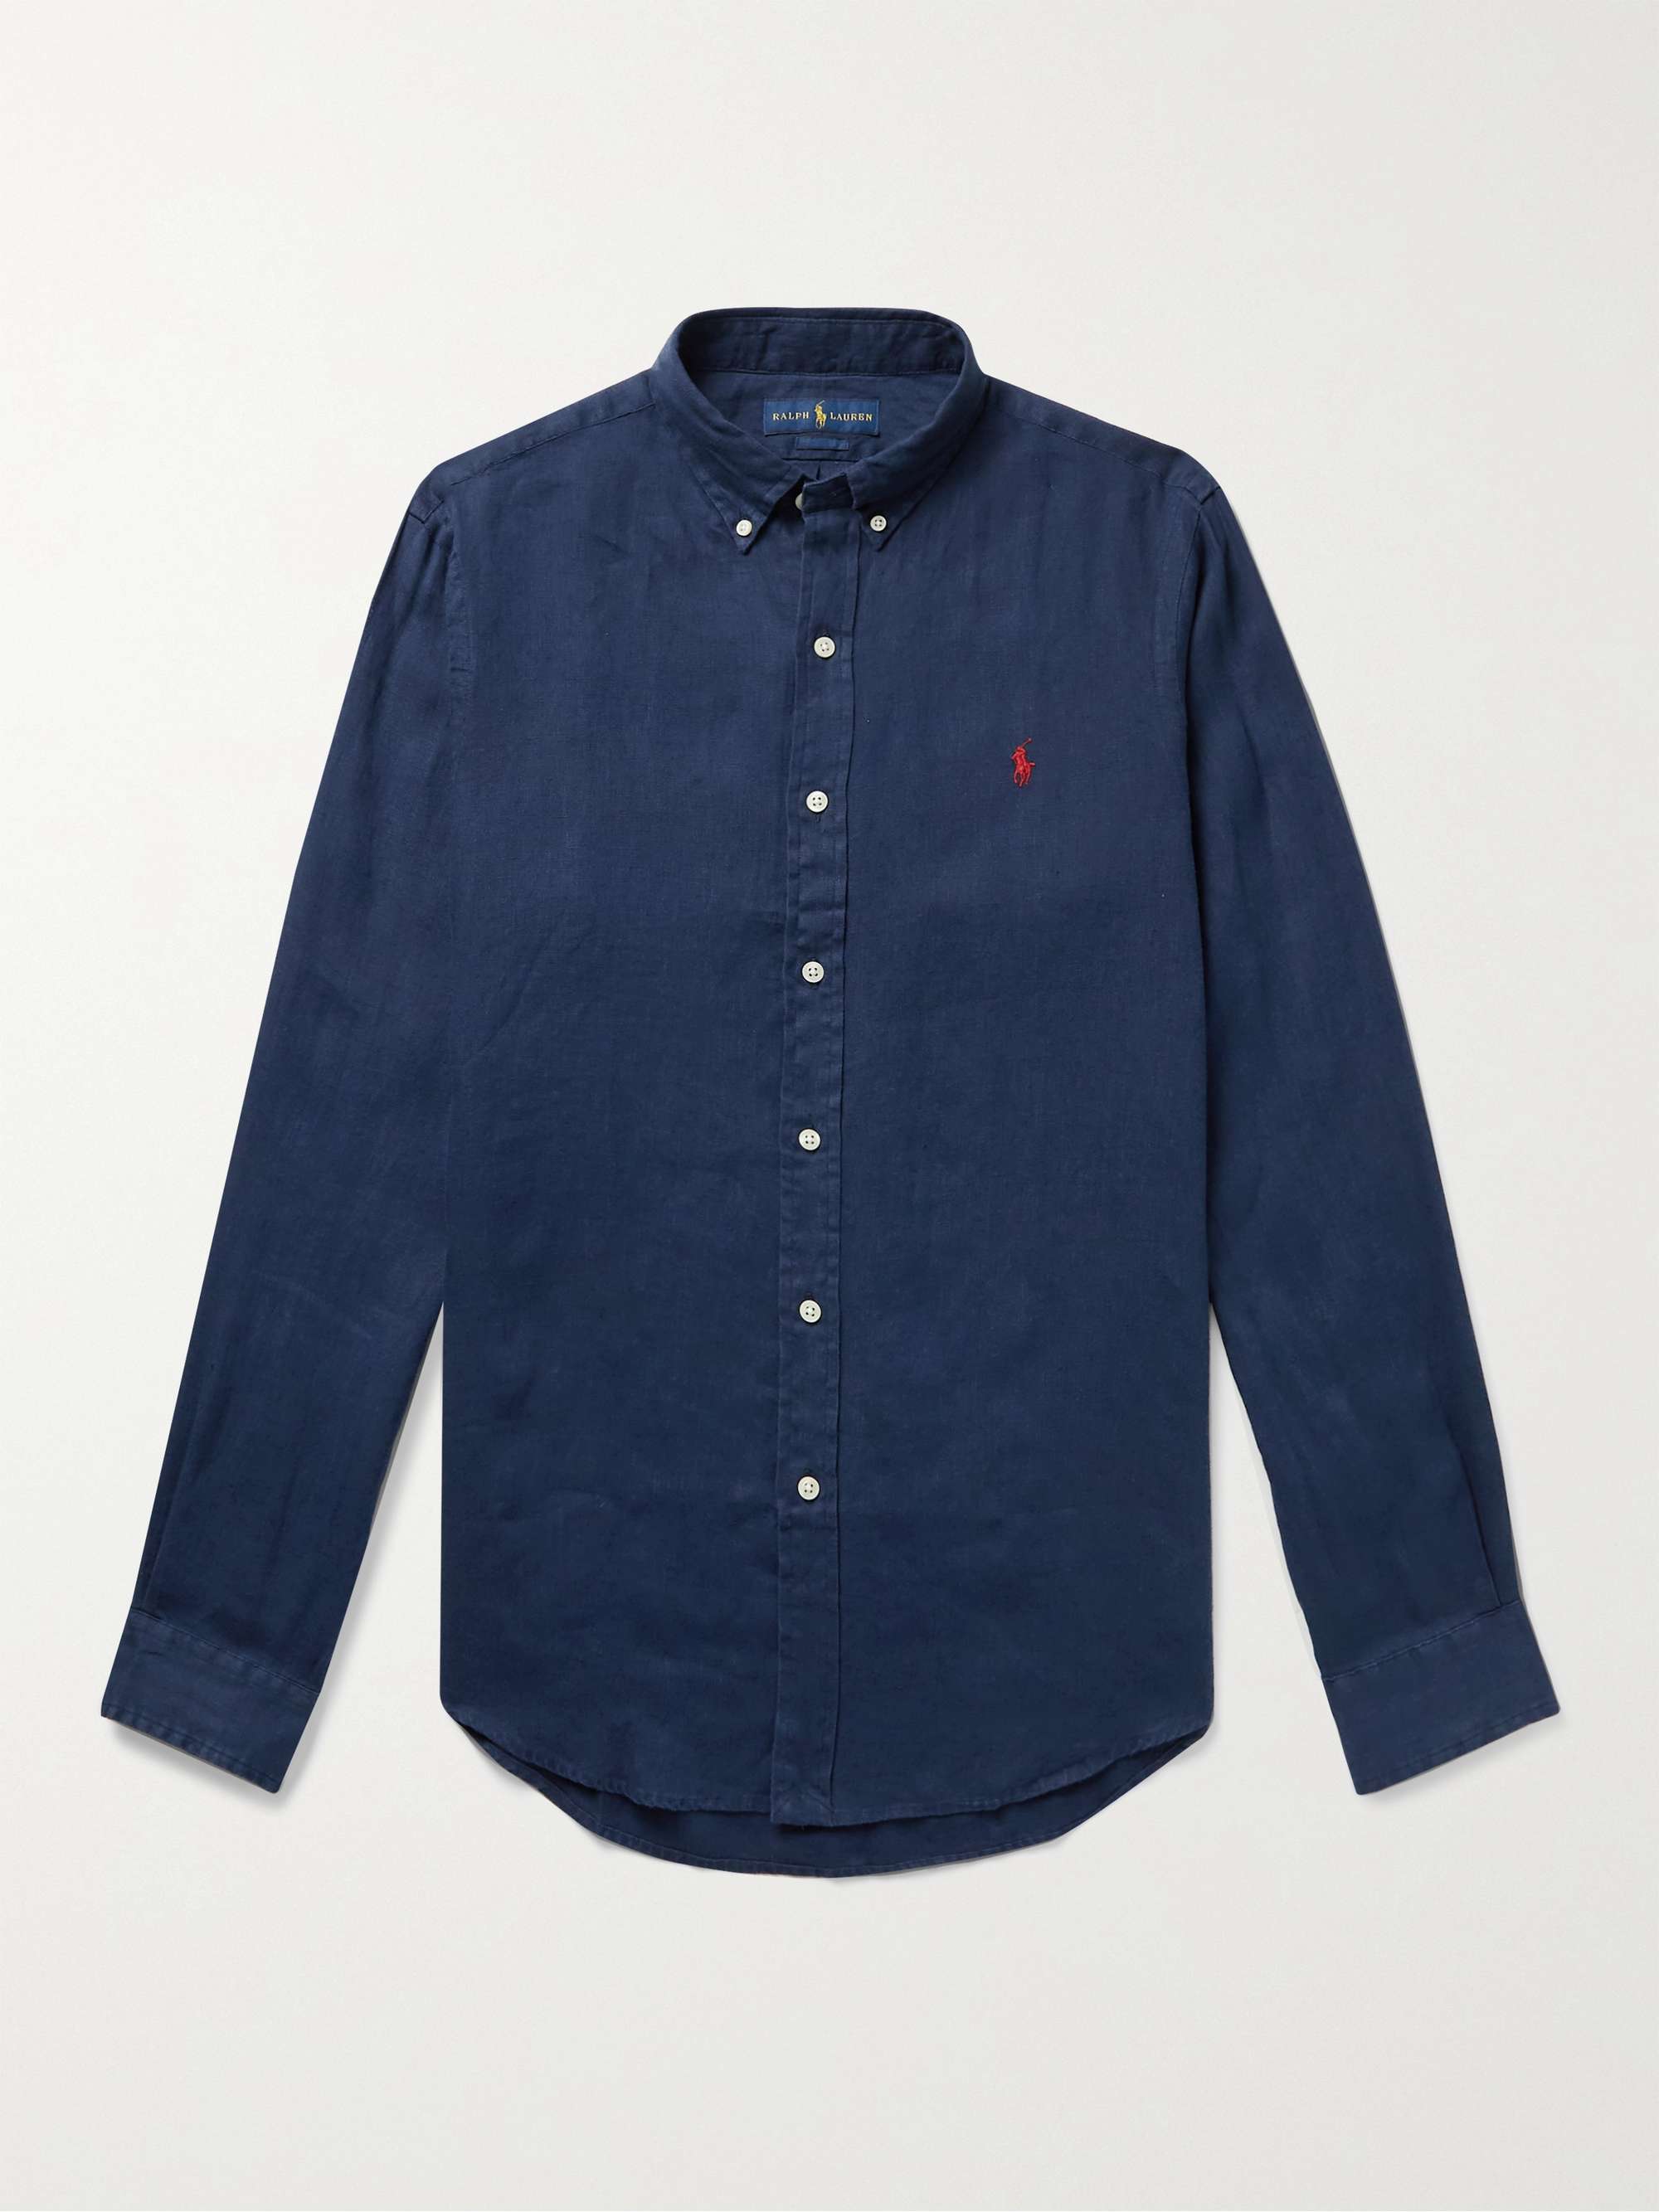 POLO RALPH LAUREN Slim-Fit Button-Down Collar Linen Shirt,Navy